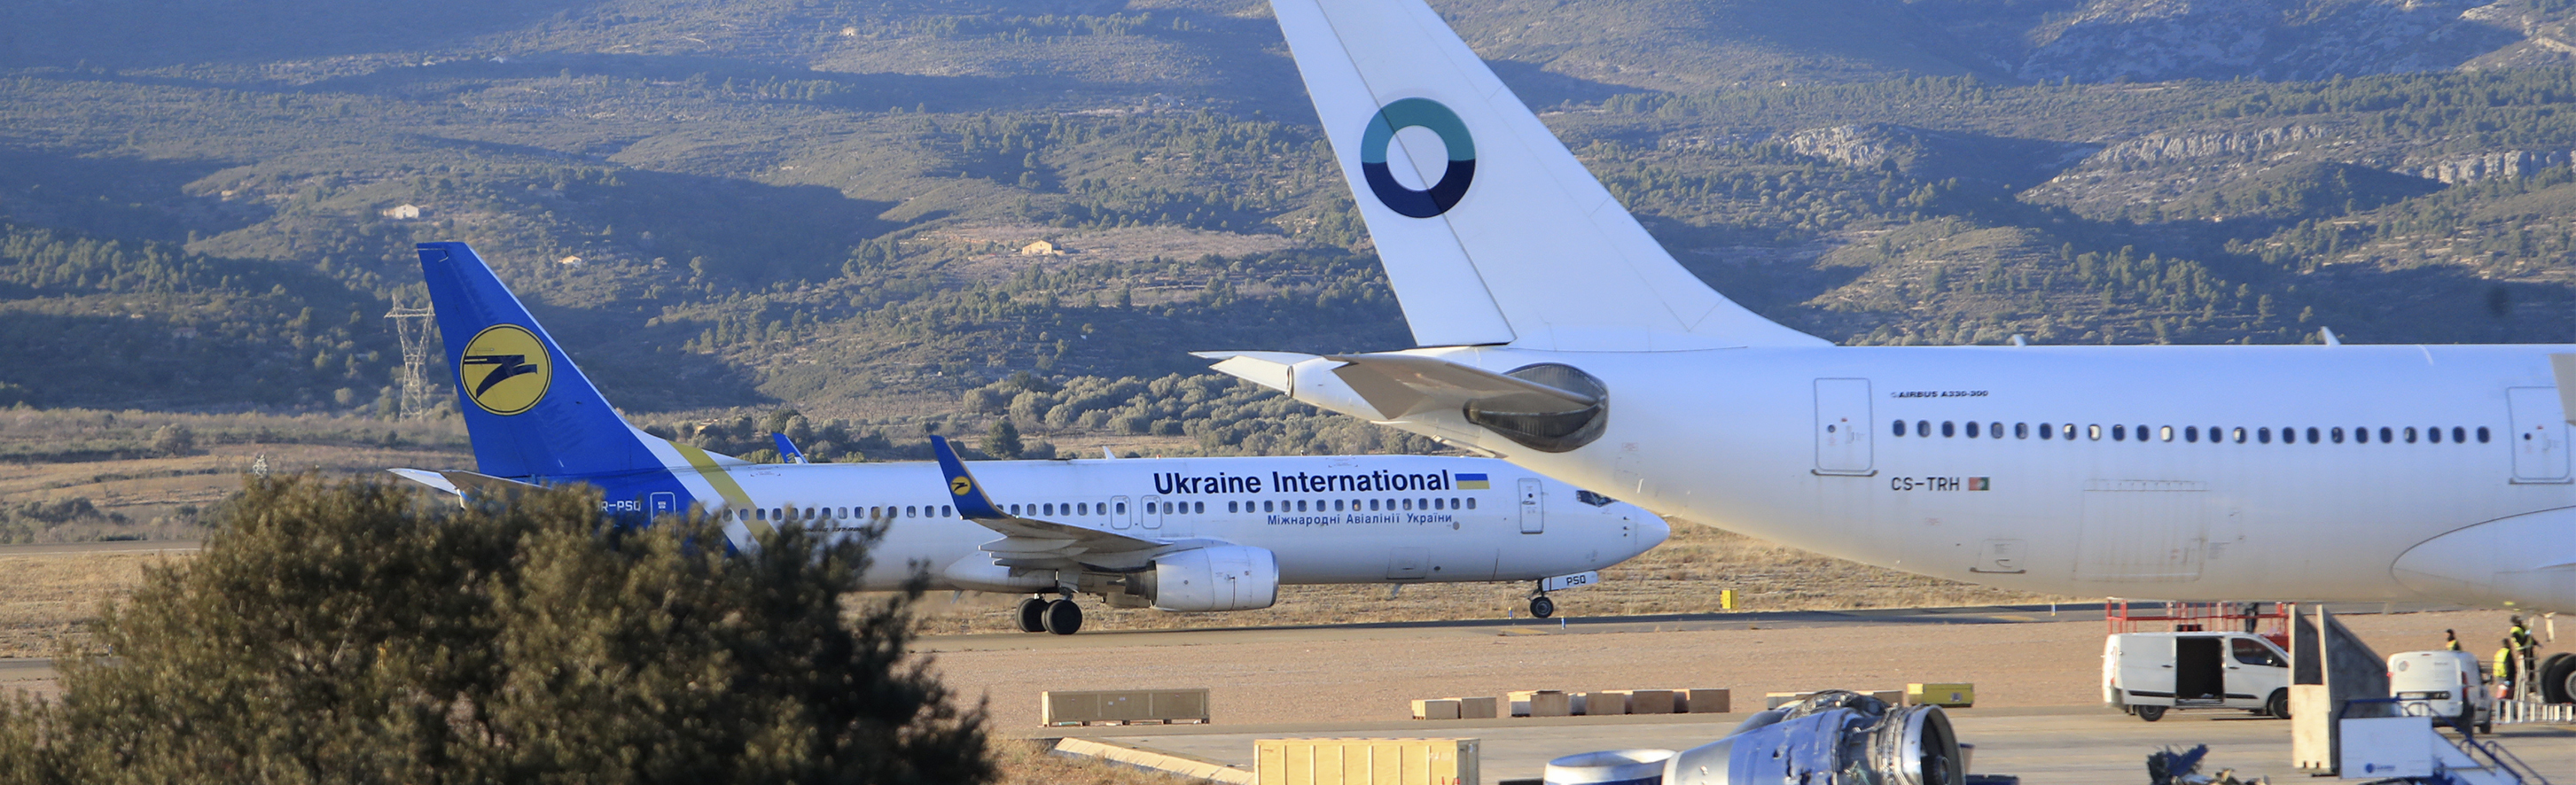 El aeropuerto ha recibido una decena de aviones comerciales de Ucrania para su estacionamiento por la invasin rusa.